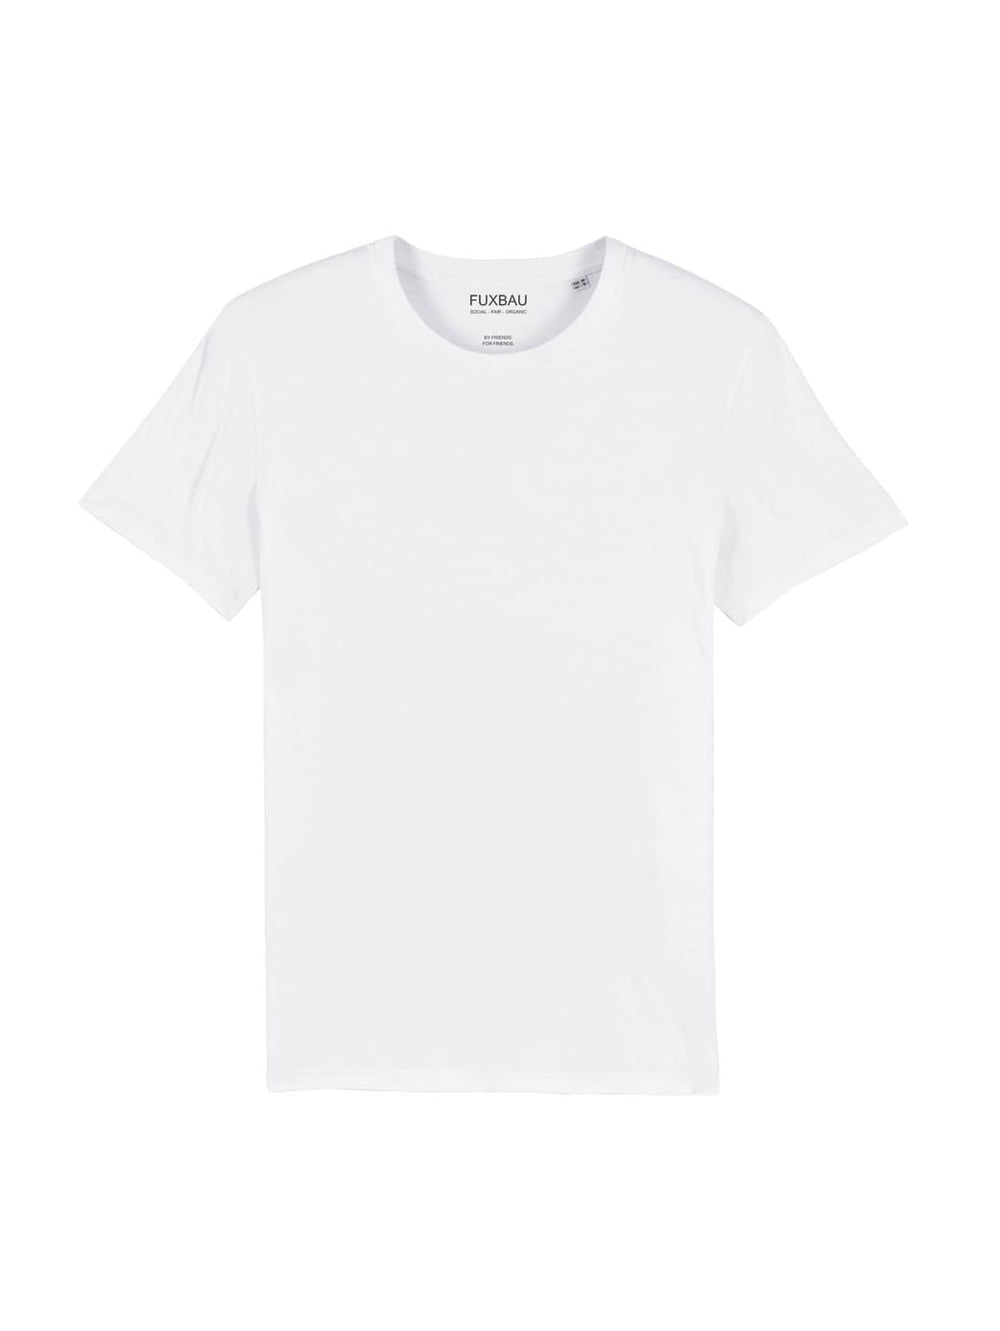 Schweres Basic T-Shirt - weiss